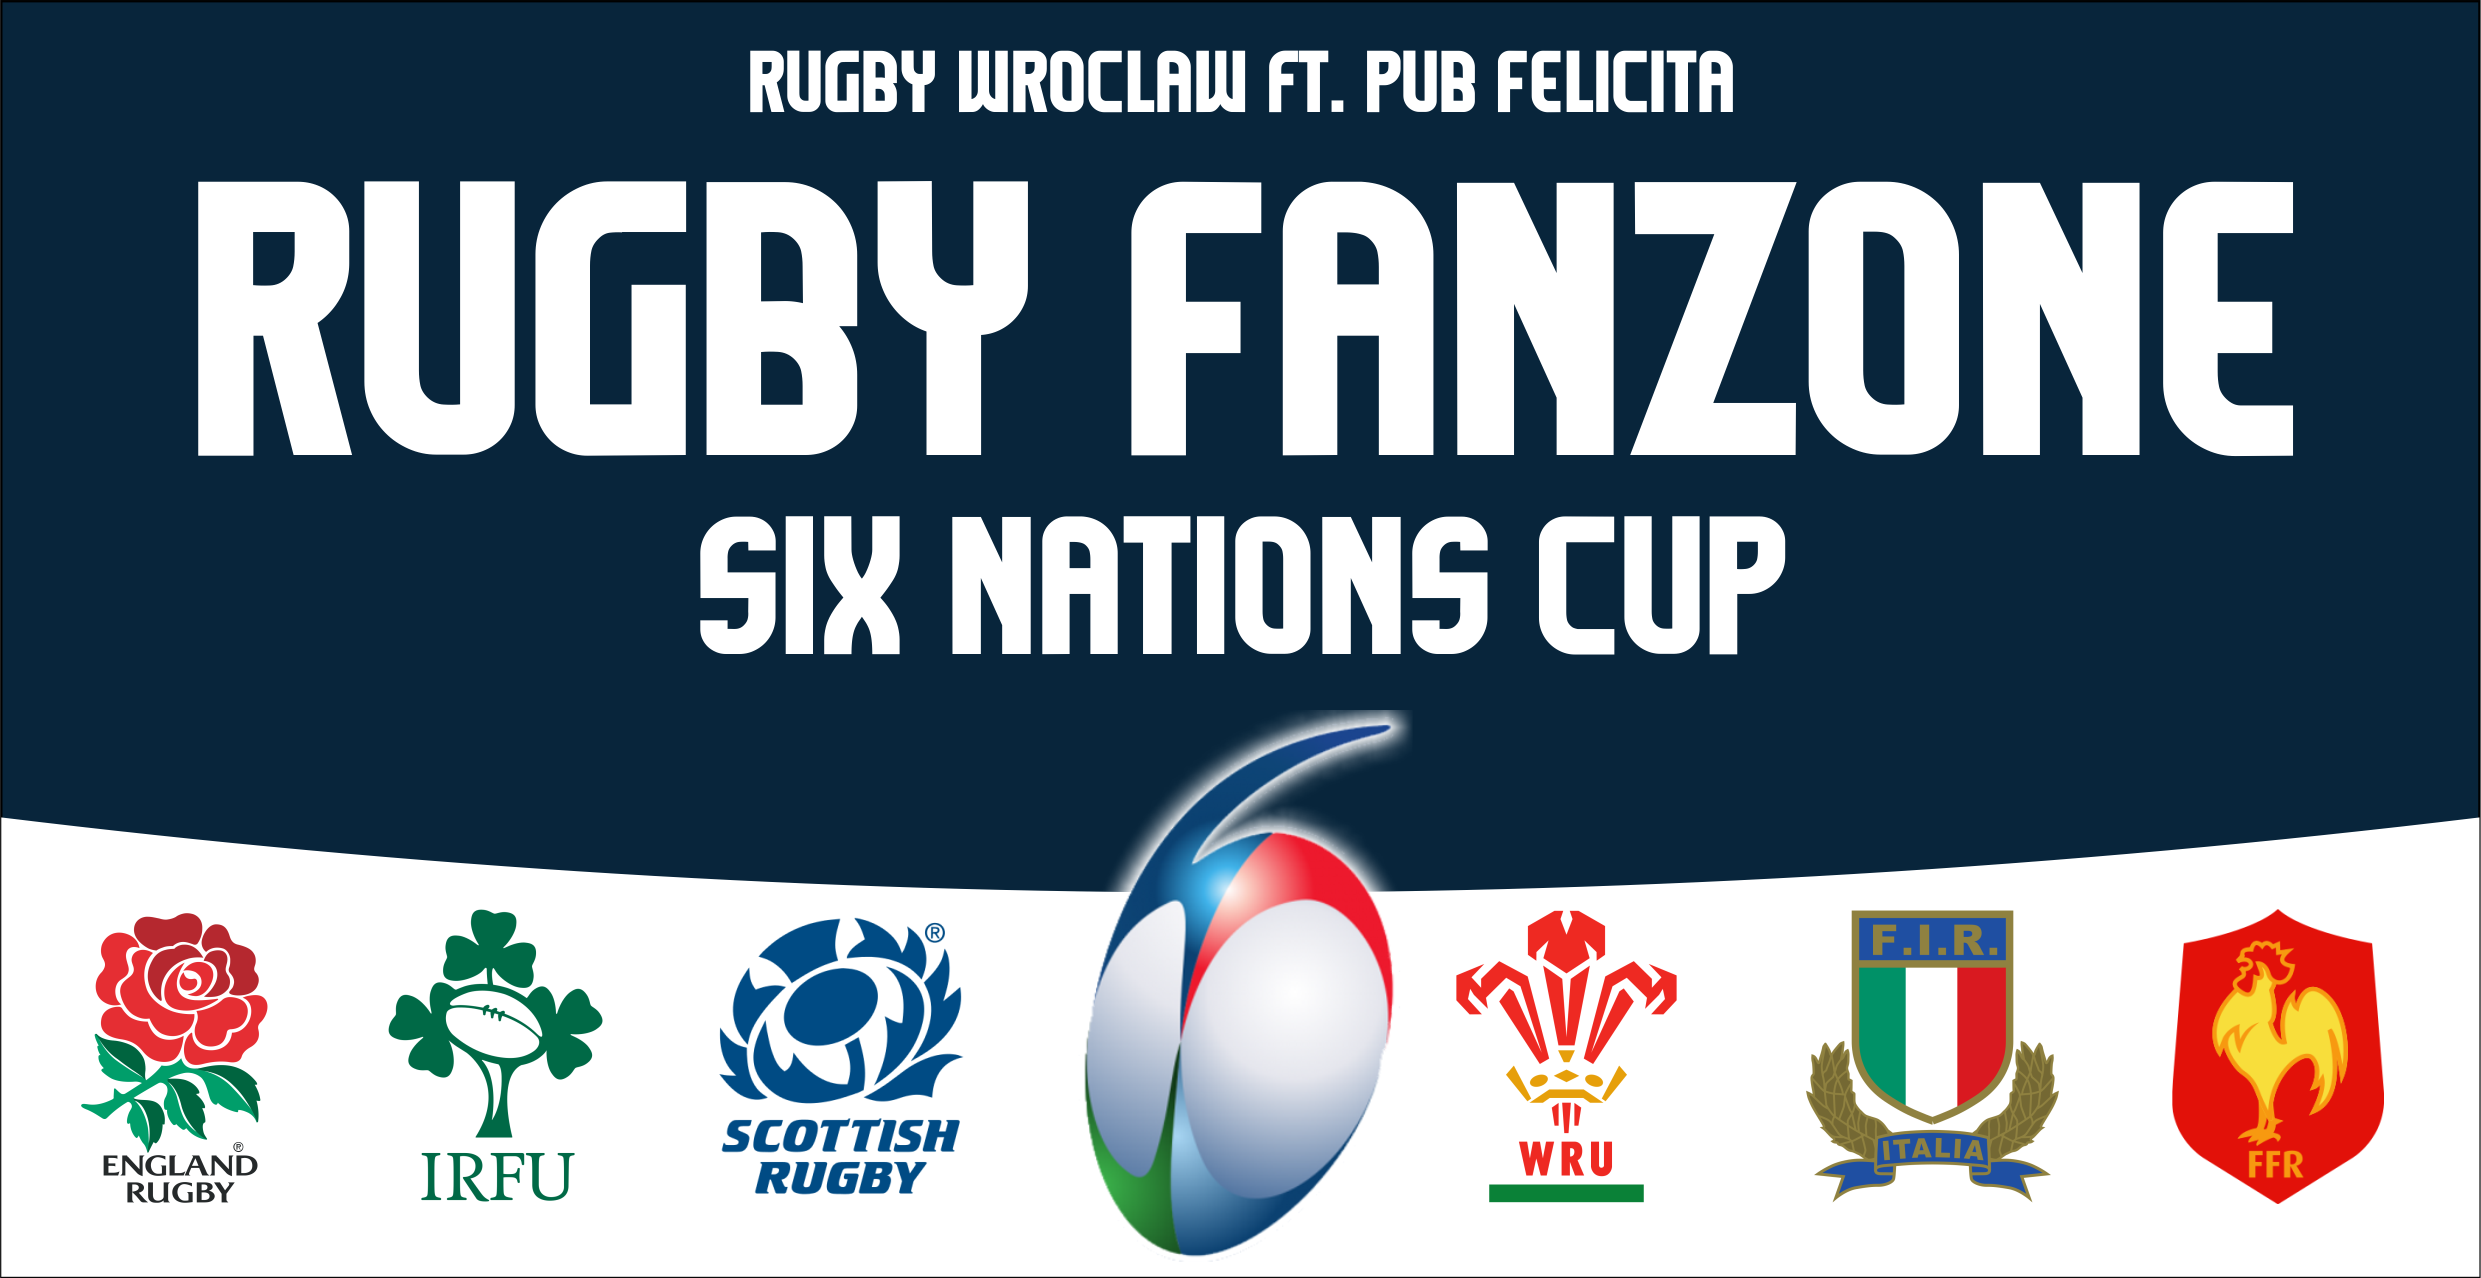 Rugby Fanzone: Puchar Sześciu Narodów/Six Nations Cup